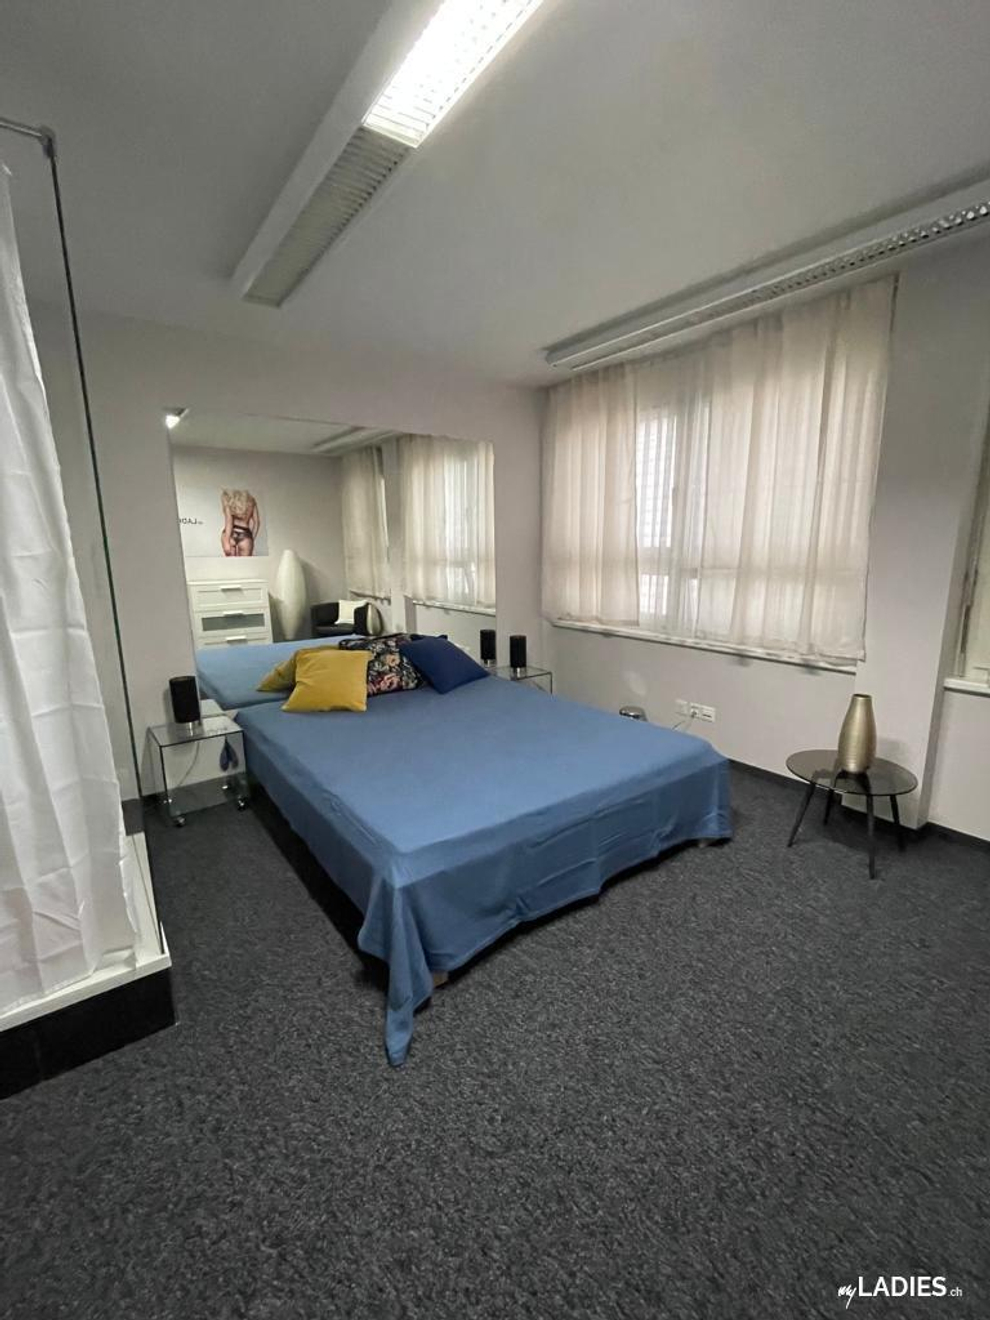 Zimmer / Rooms / Habitaciones in Baden Aargau / Bild 2